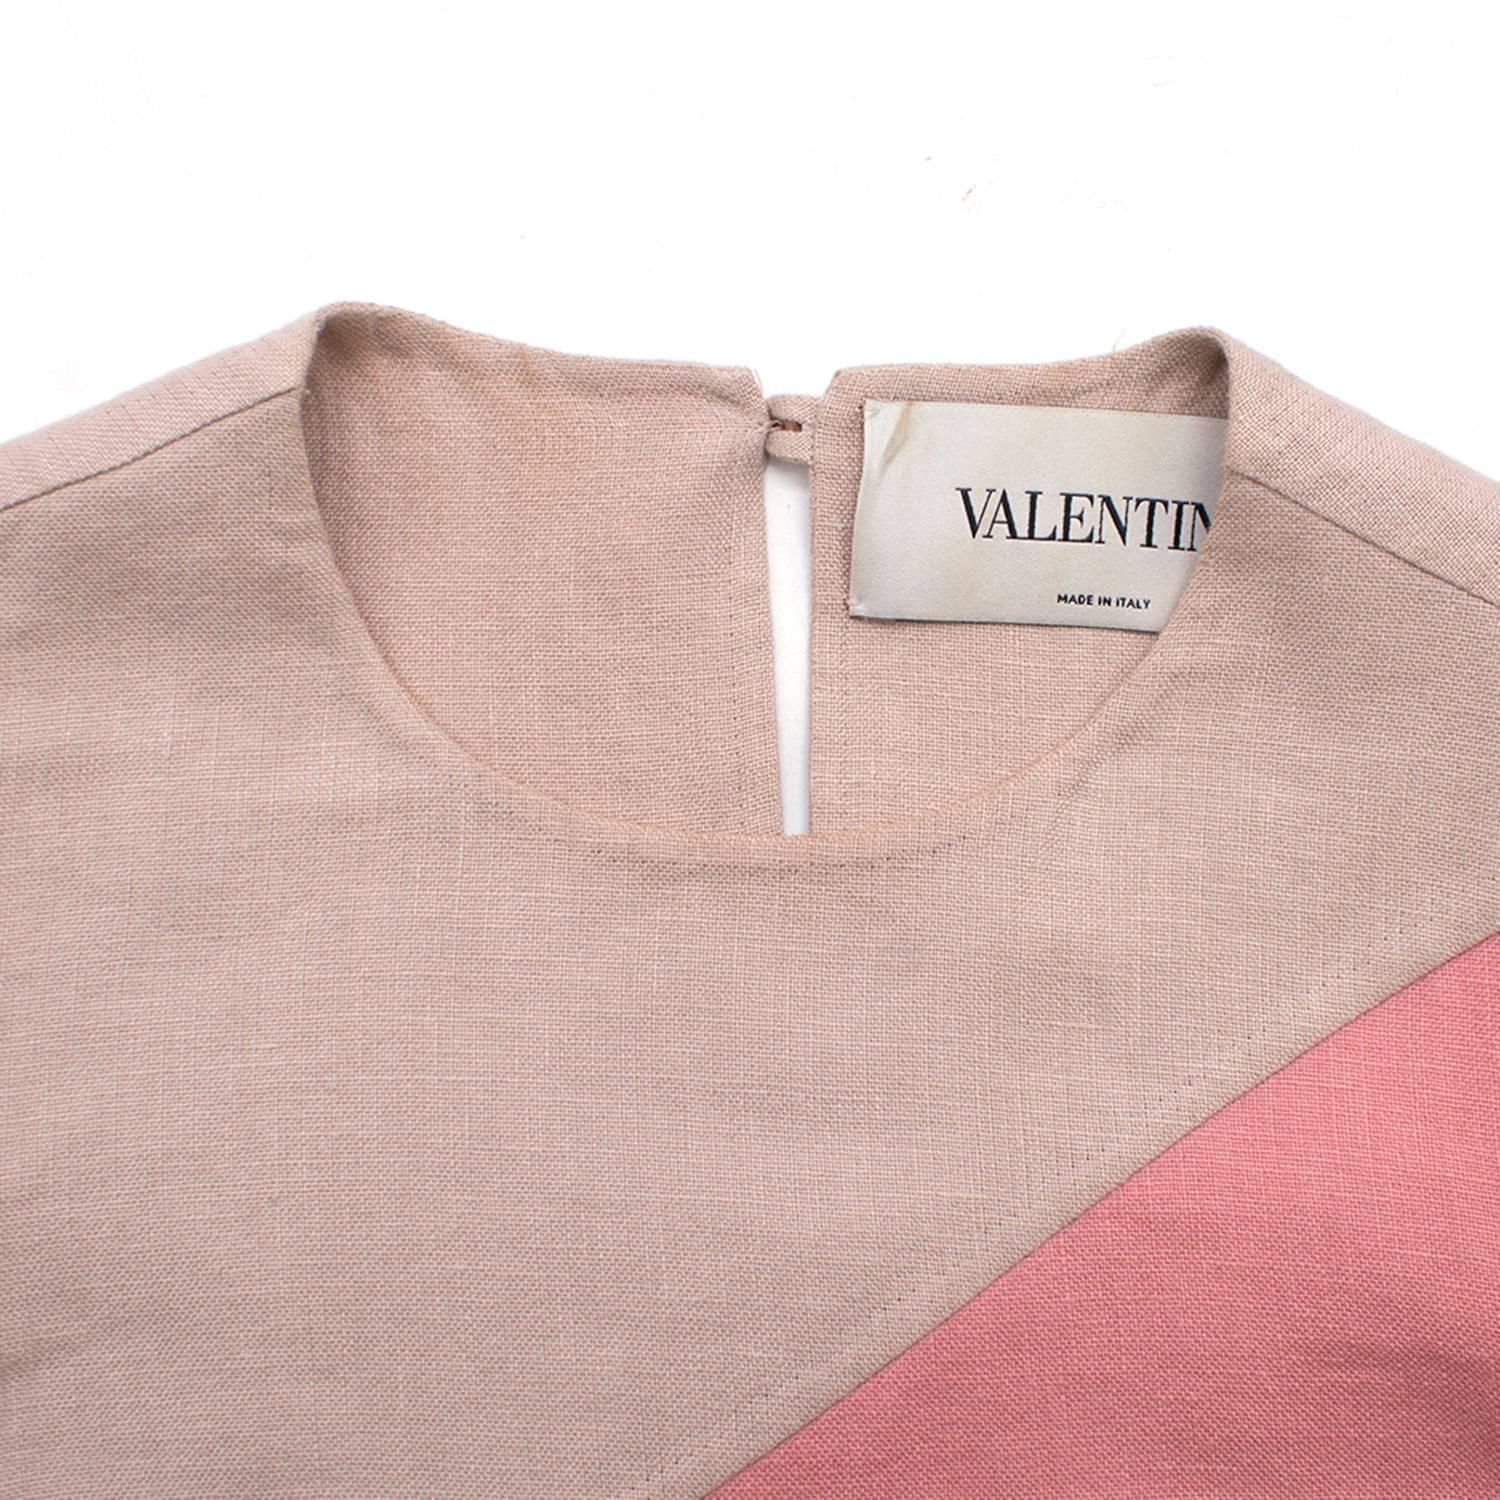 Valentino Multi Coloured Striped Dress S In Good Condition In London, GB